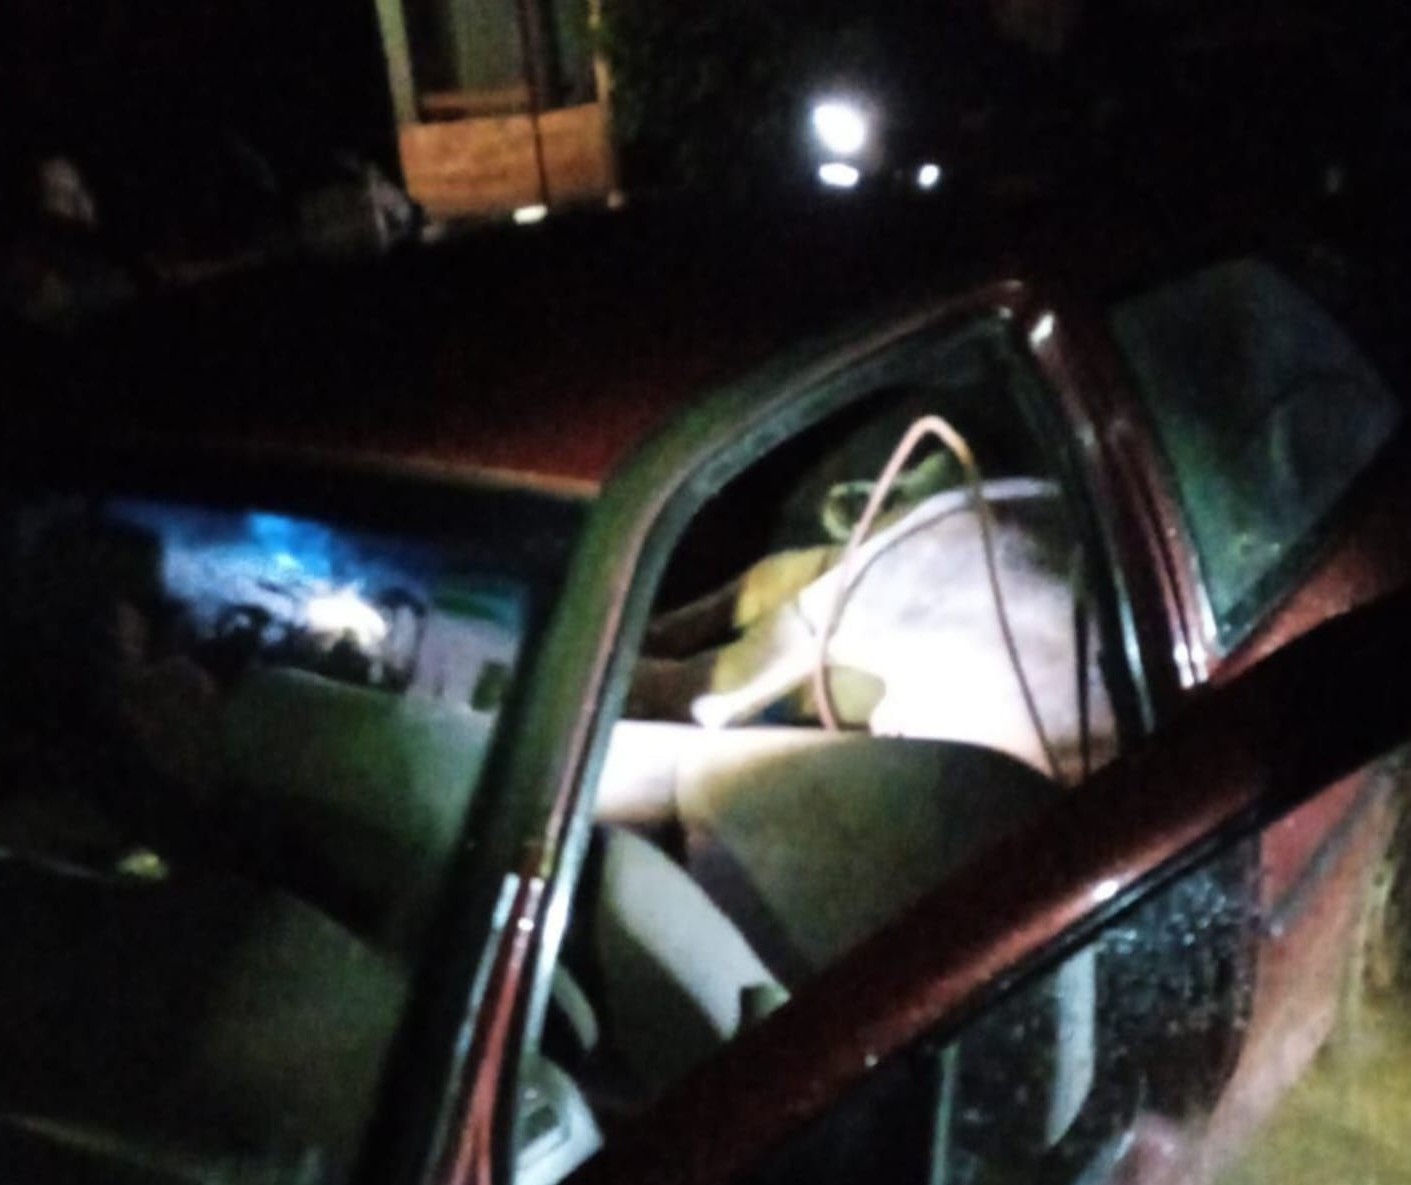 Boi furtado é encontrado amarrado dentro de carro na região de Maringá